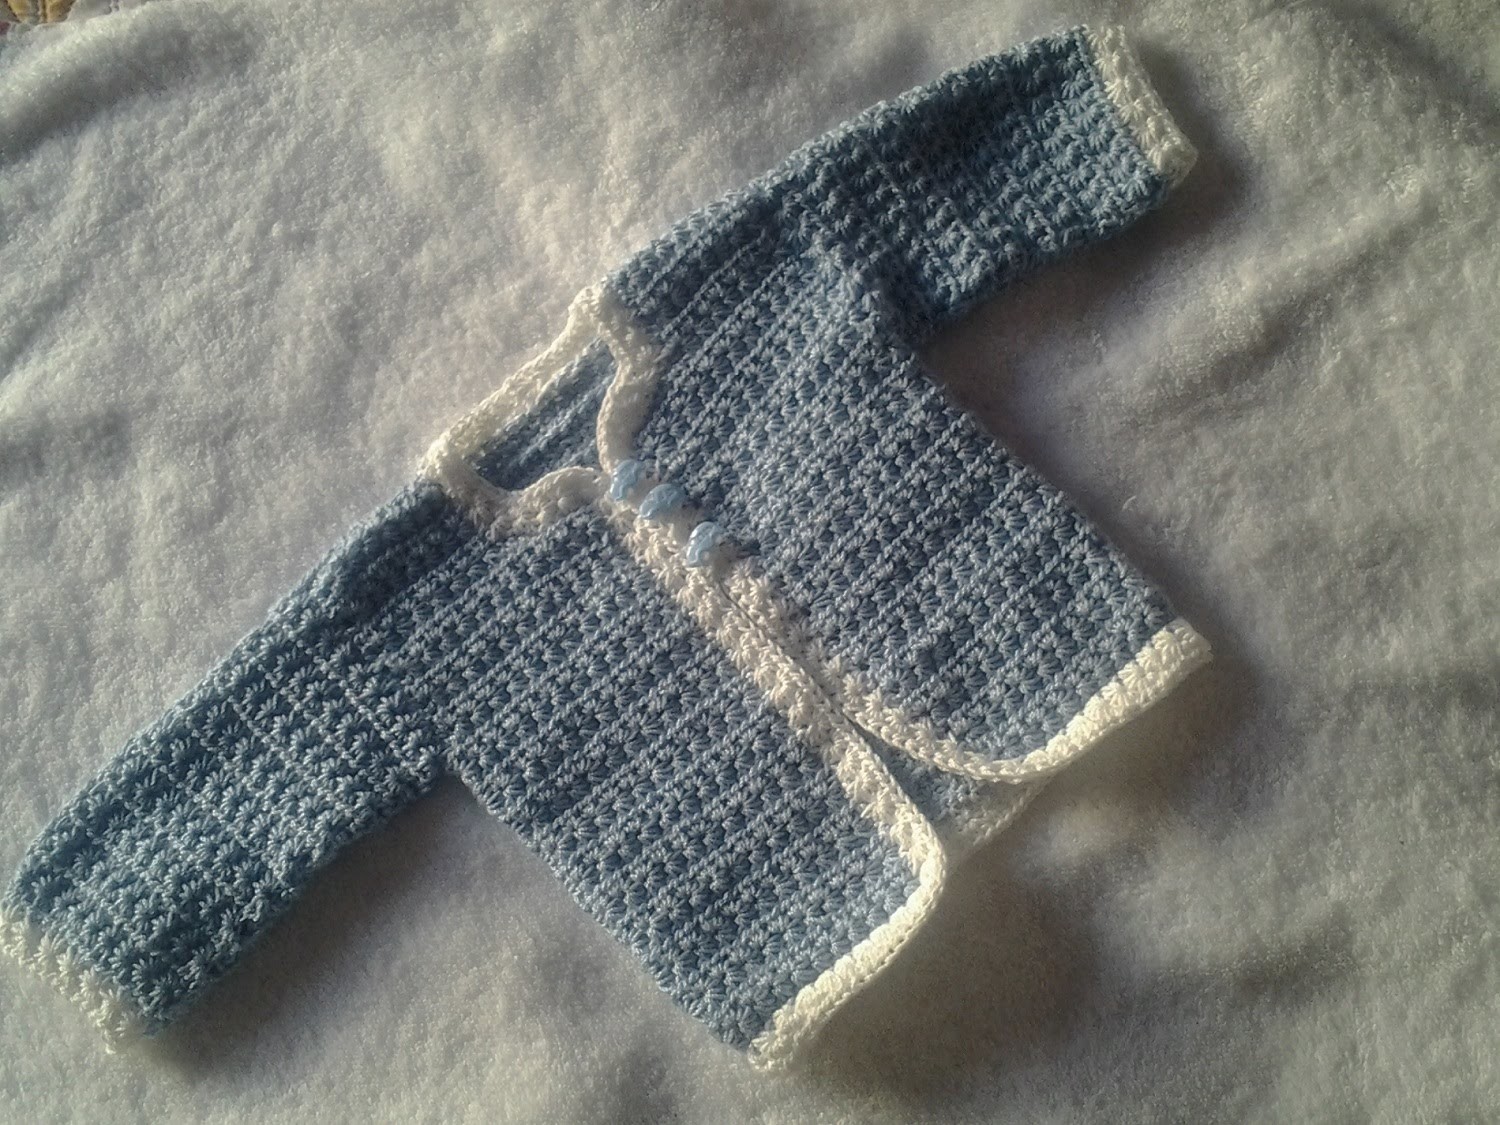 Chaqueta ,chambrita o cardigan a crochet bebe primera puesta #tutorial #pasoapaso